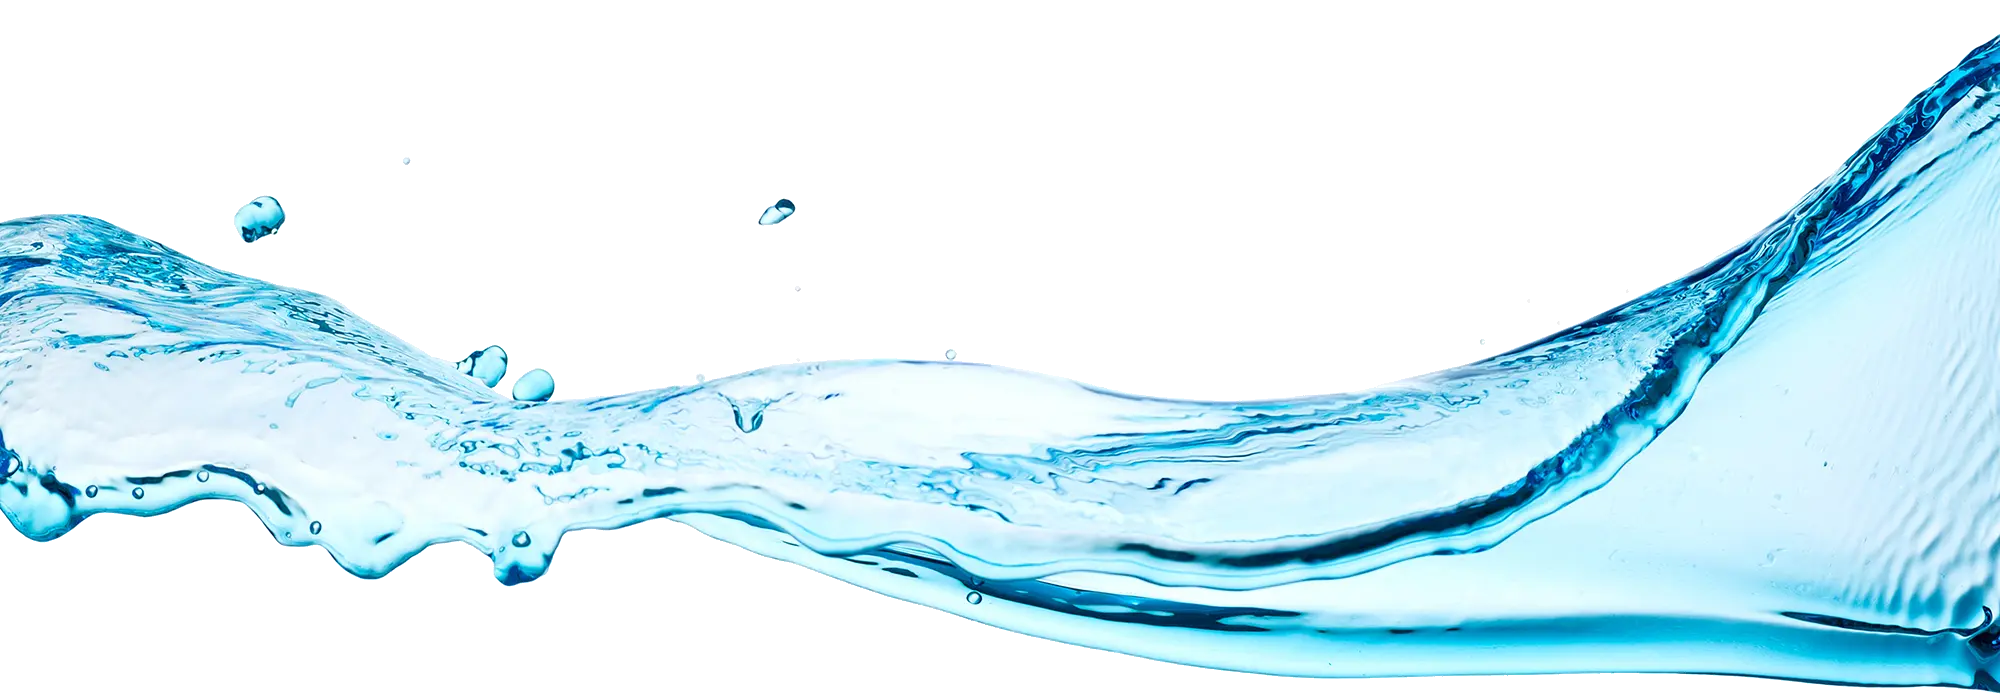 Ya sea como gel vaginal, lubricante vaginal o crema humectante vaginal, Gynomunal es le mejor opción como tratamiento para la resequedad vaginal regresando la frescura a tu zona íntima como gel hidratante femenino con ácido hialurónico.